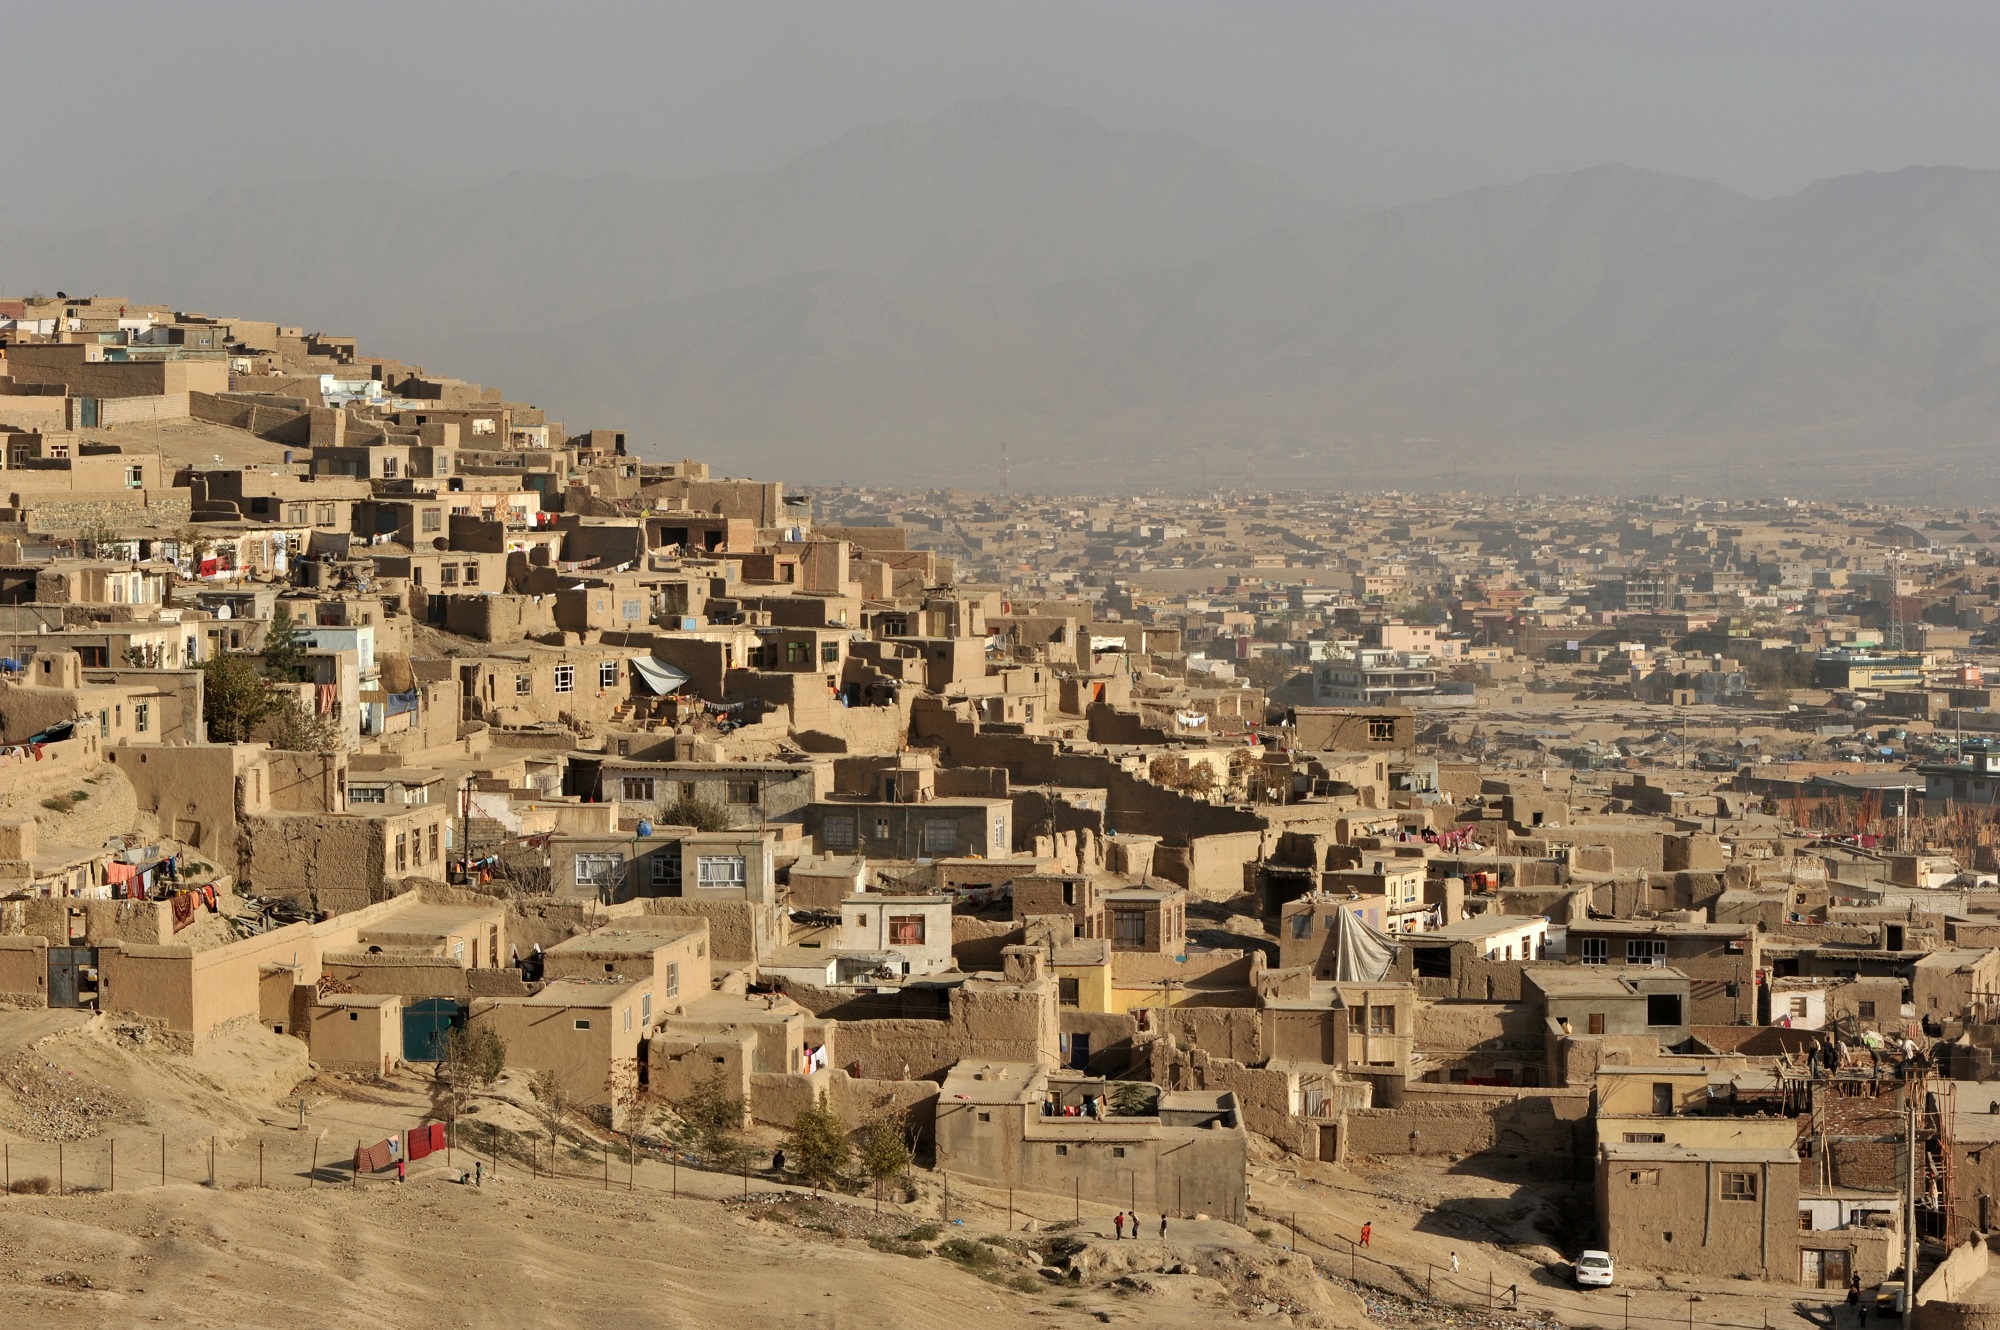 Houses in Kabul, Afghanistan